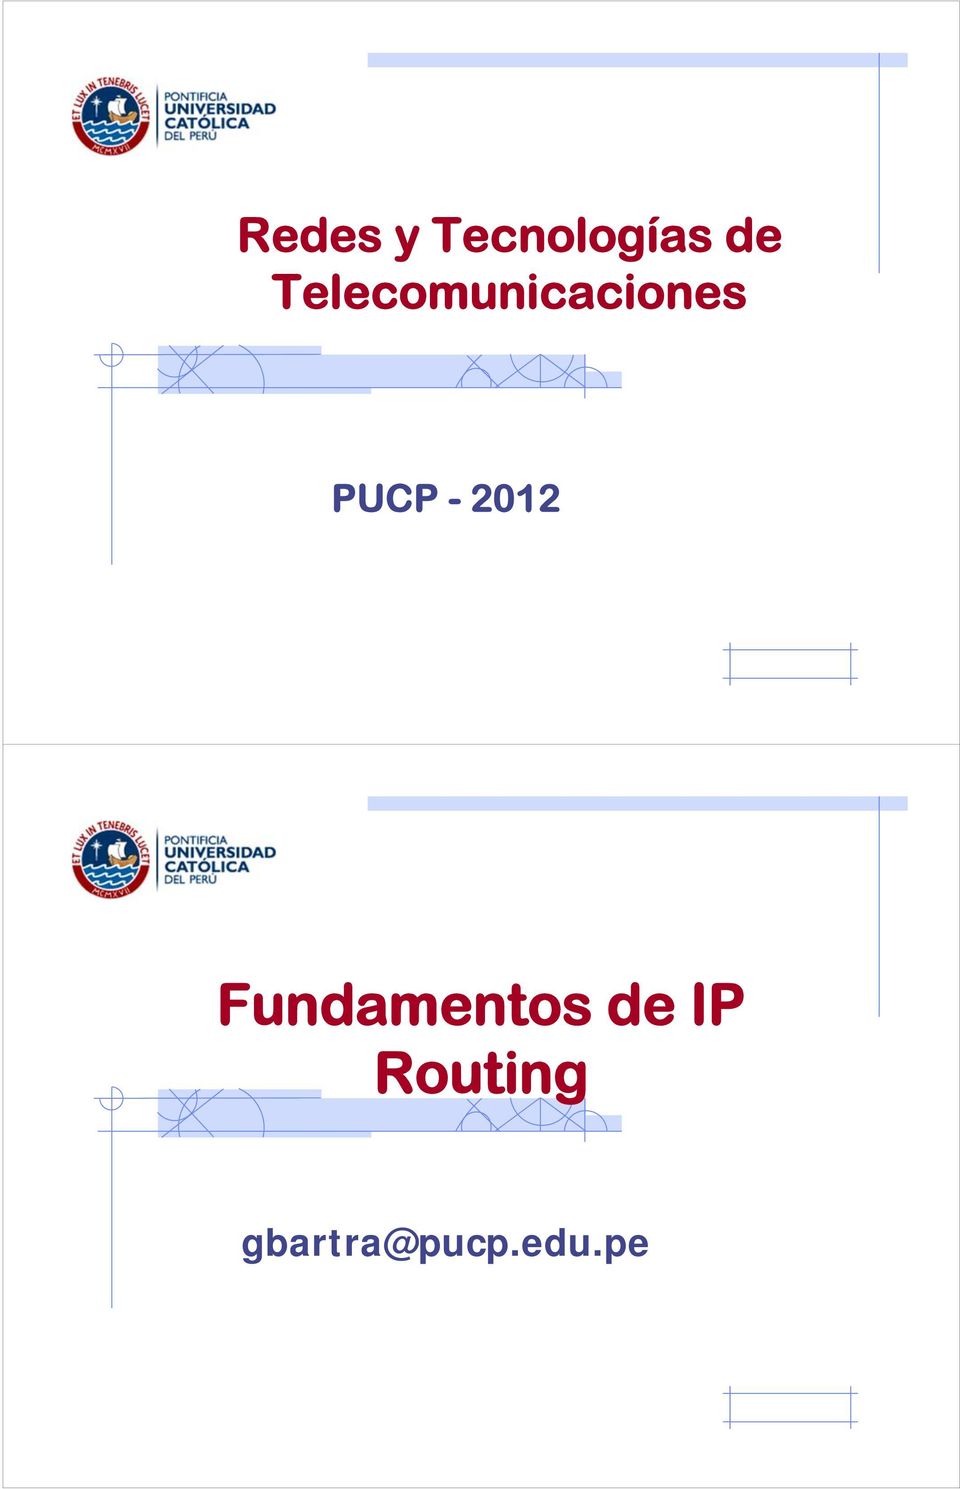 - 2012 Fundamentos de IP